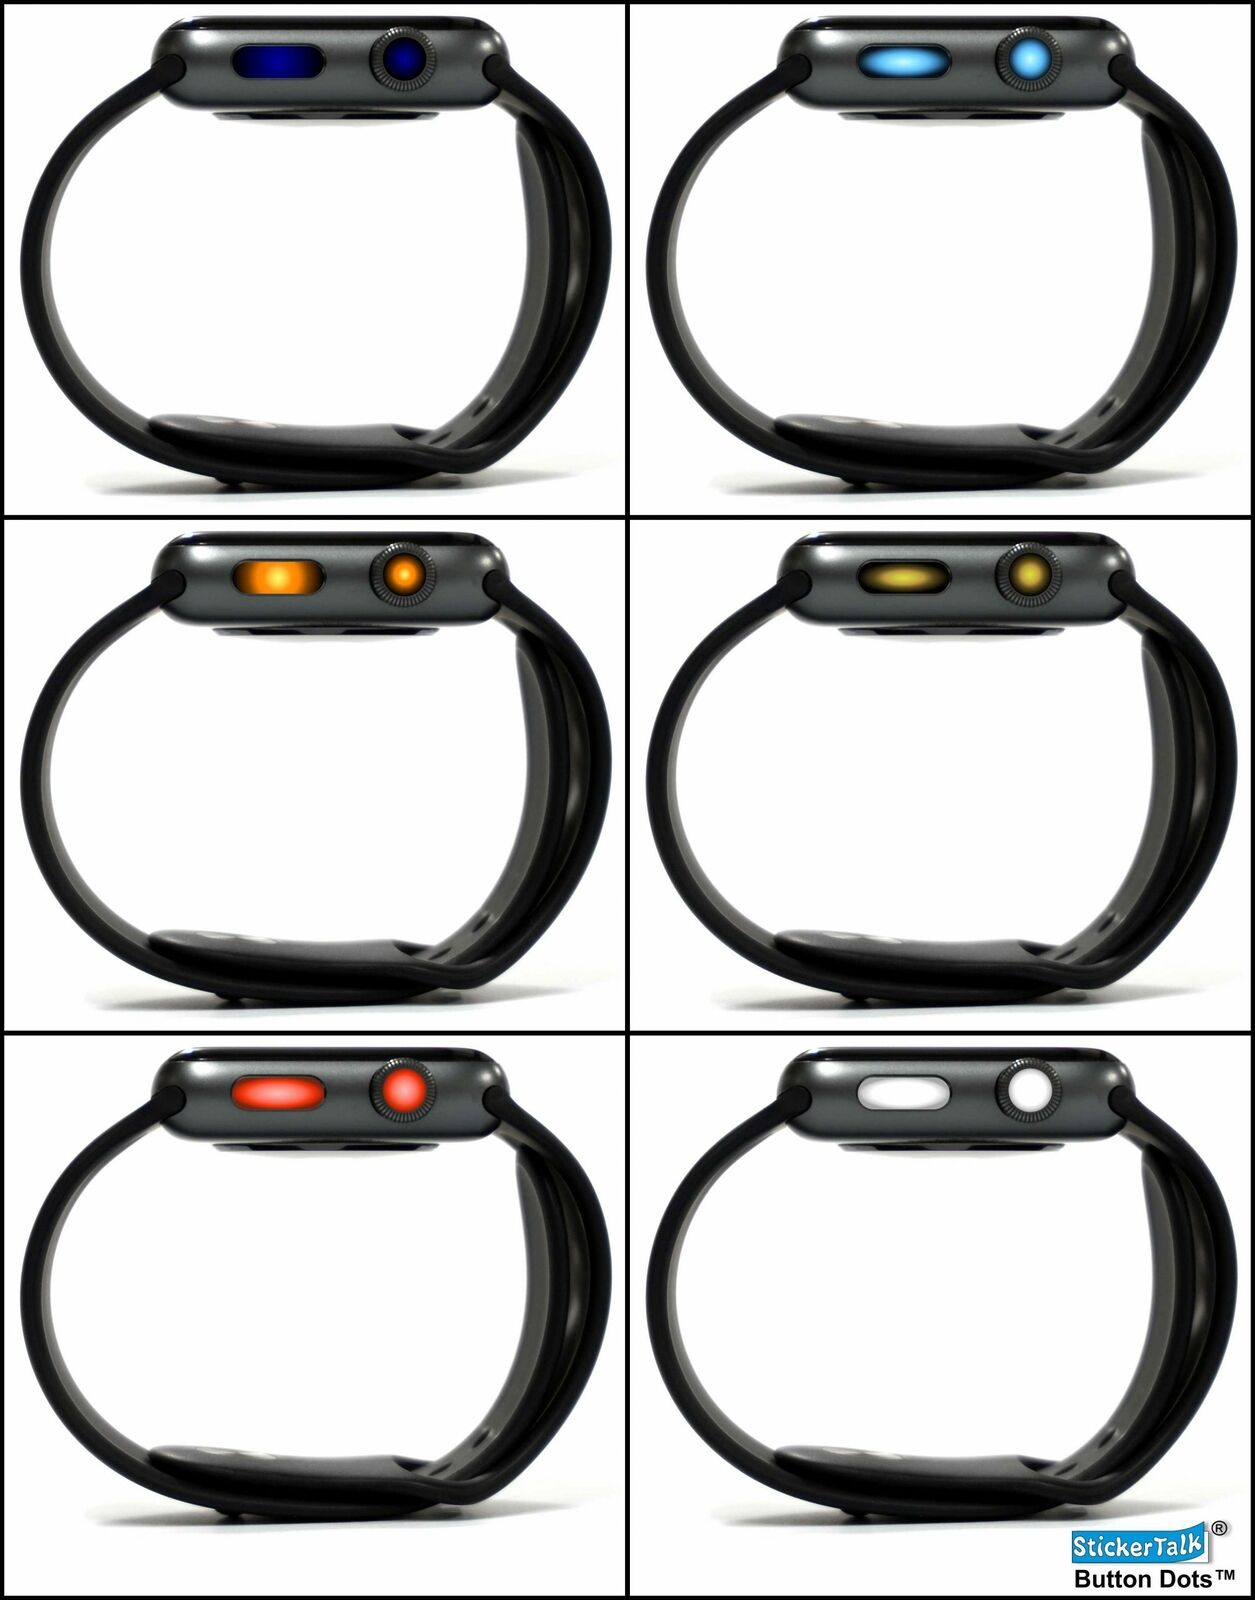 StickerTalk® Brand [24x] Groovy Gradient Apple Watch Crown Button Dots™ Stickers